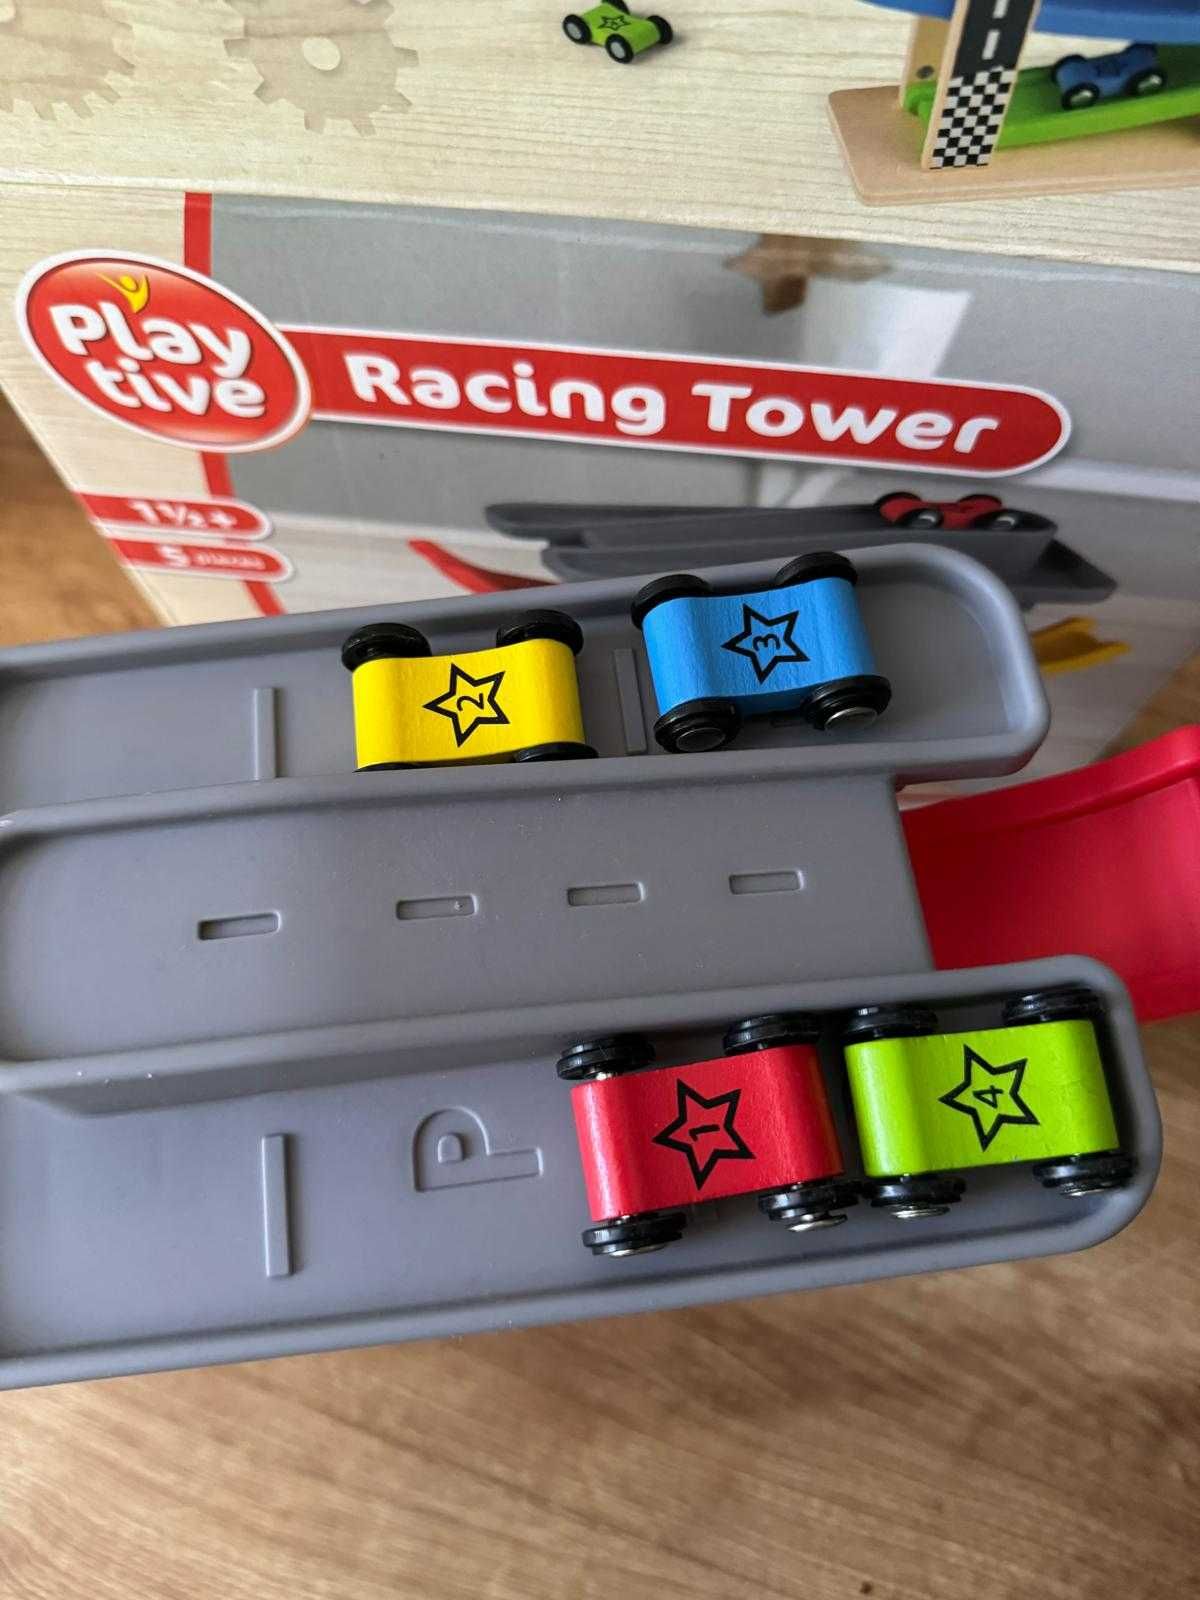 Zabawka Playtive Wieża wyścigowa nowa okazja